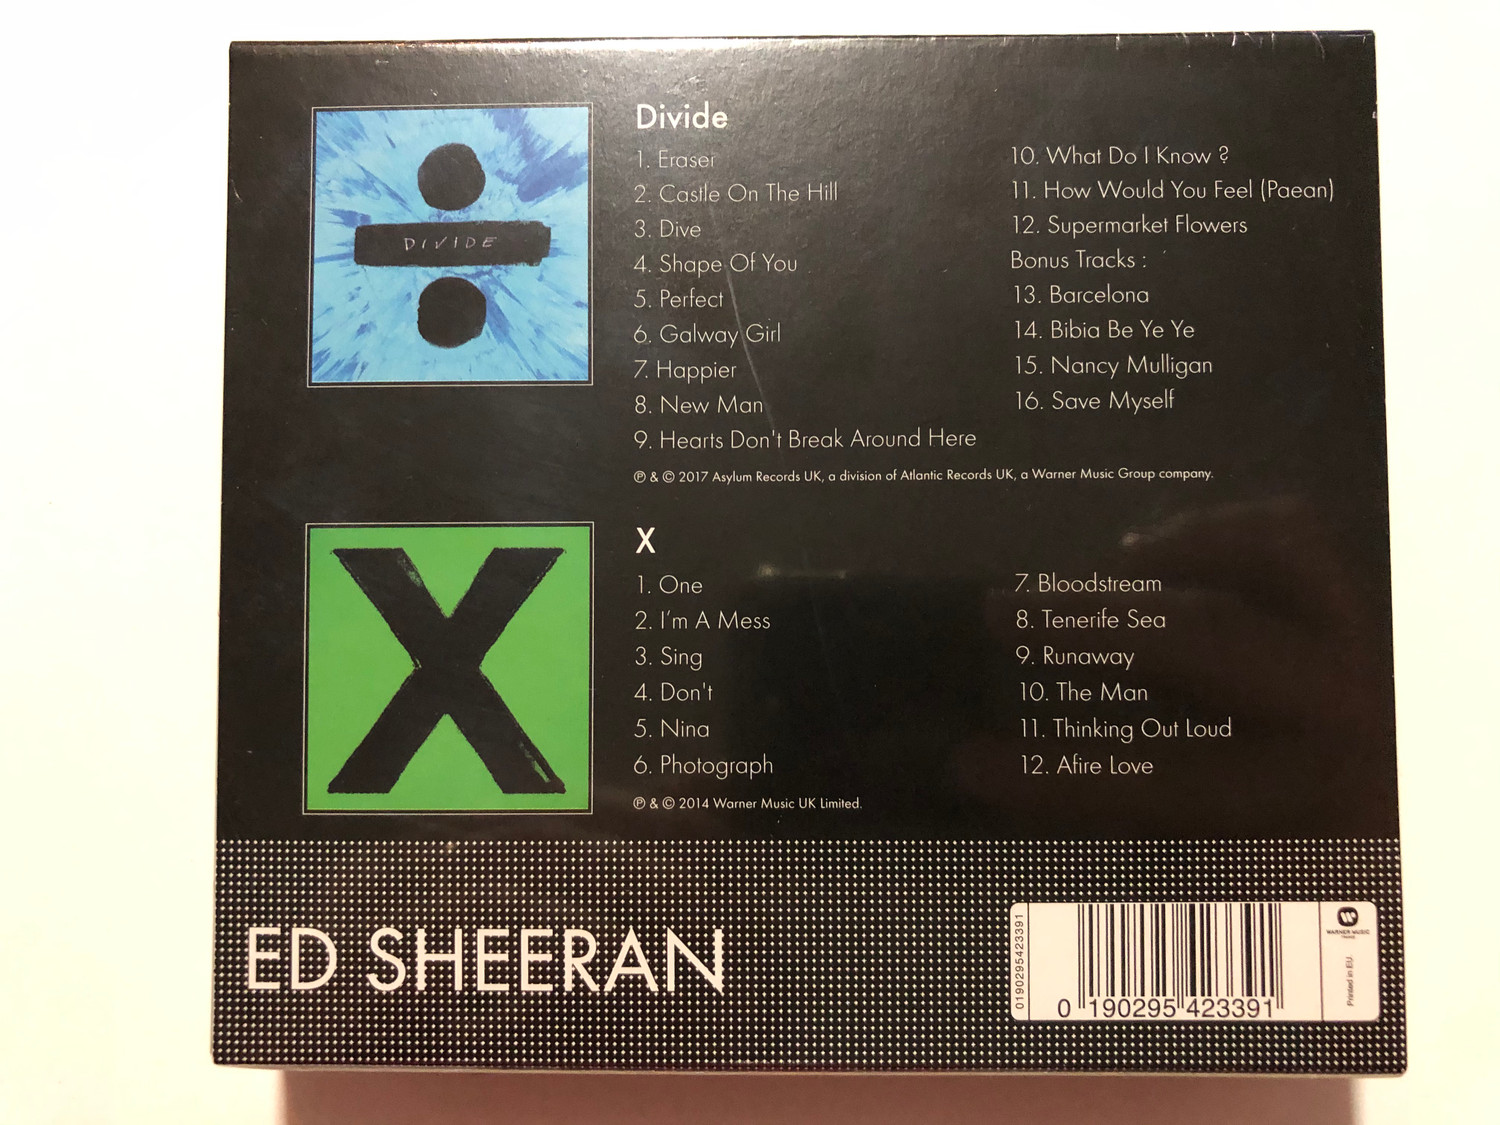 Ed Sheeran - ÷ Divide